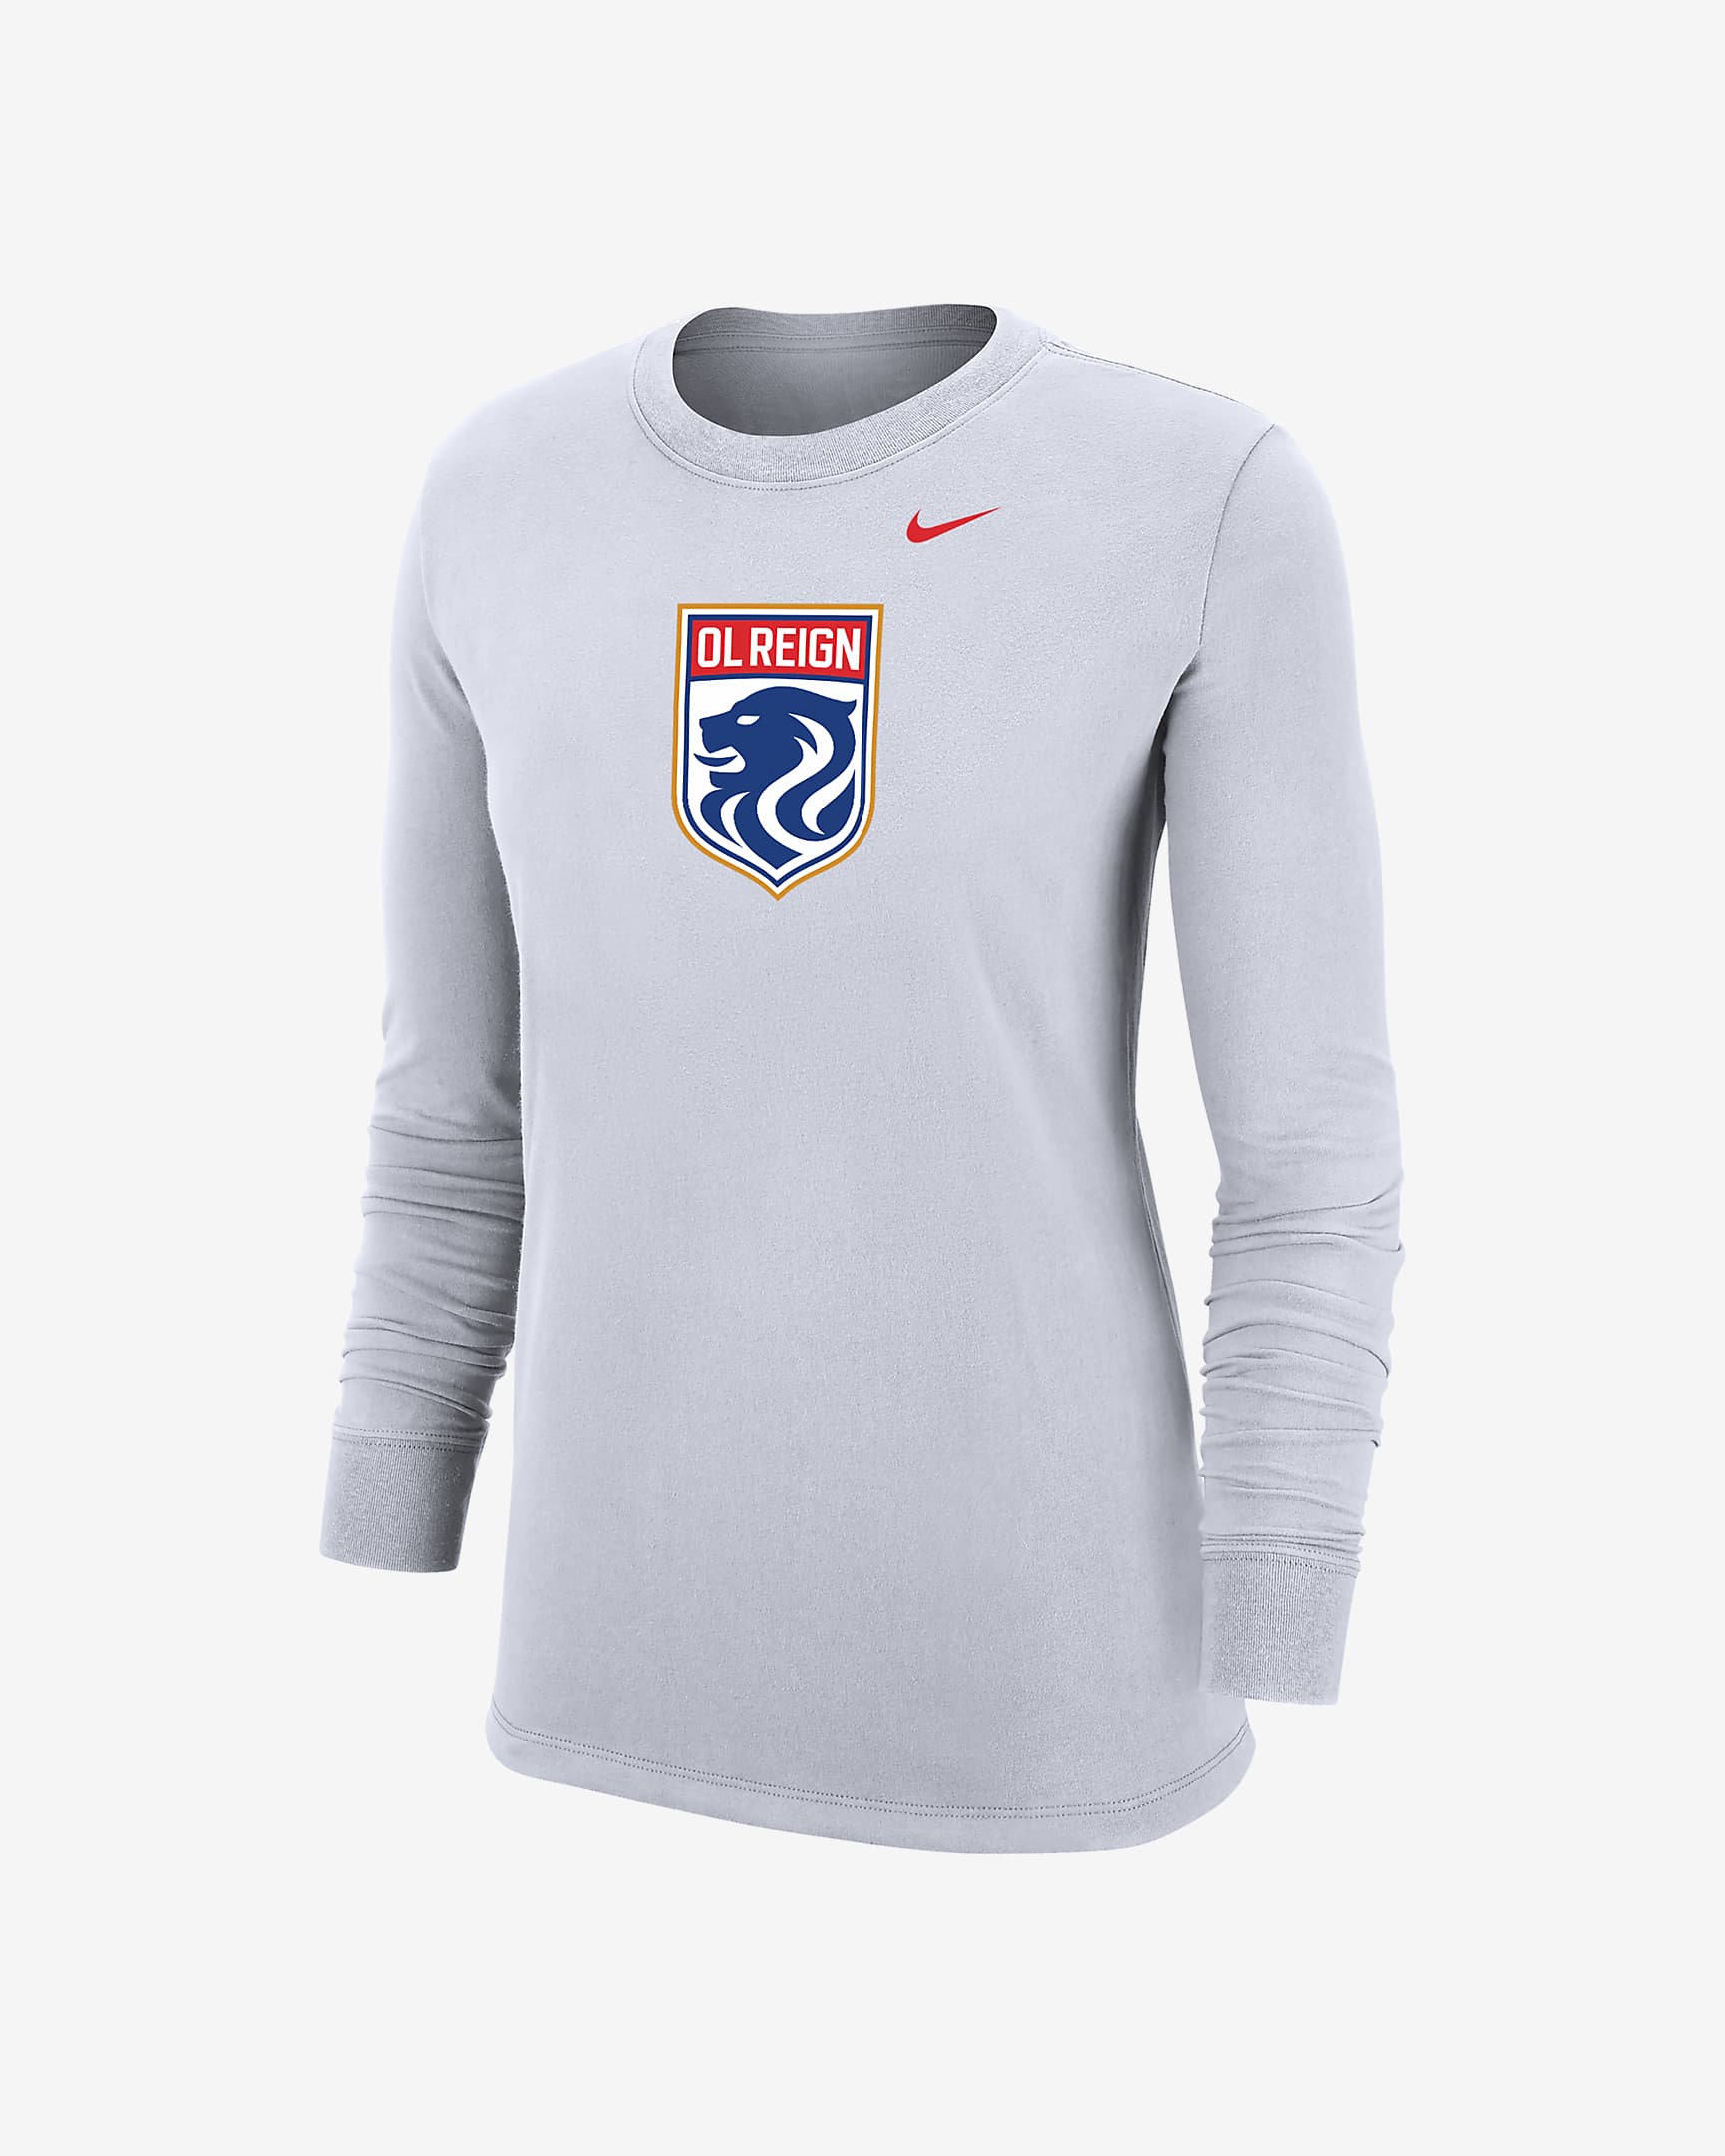 OL Reign Women's Nike Soccer Long-Sleeve T-Shirt. Nike.com